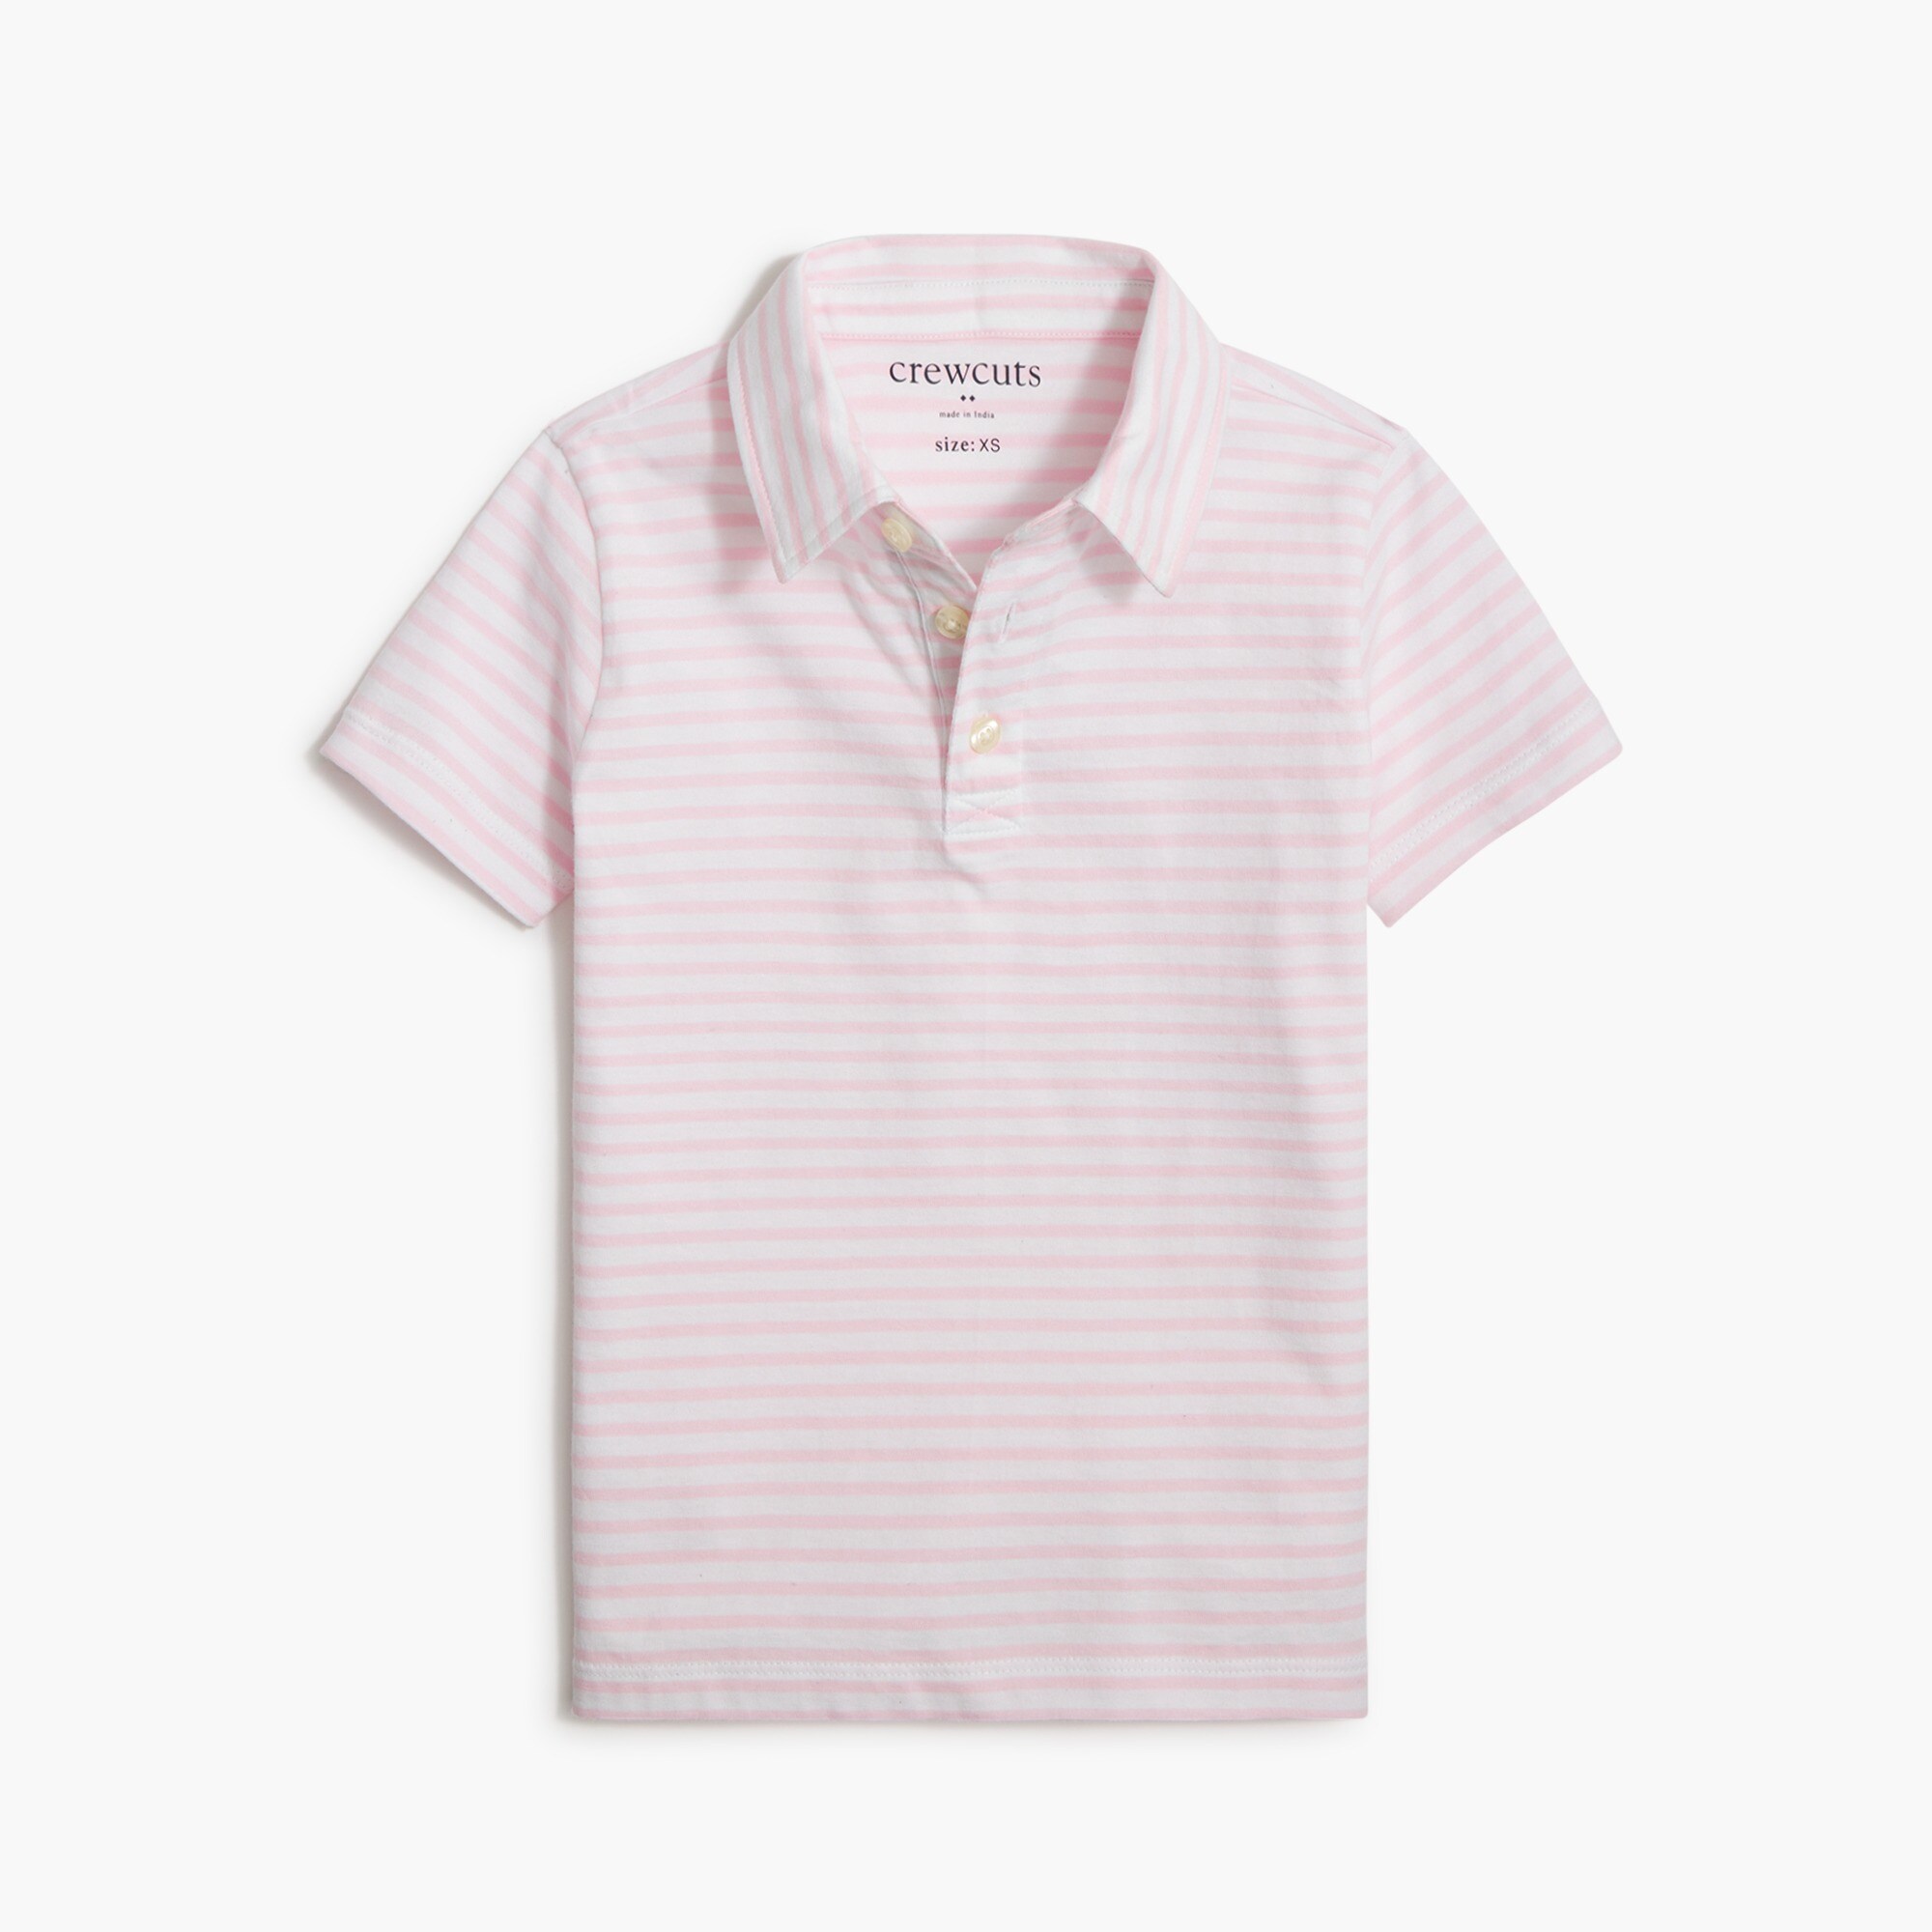  Boys' cotton striped polo shirt